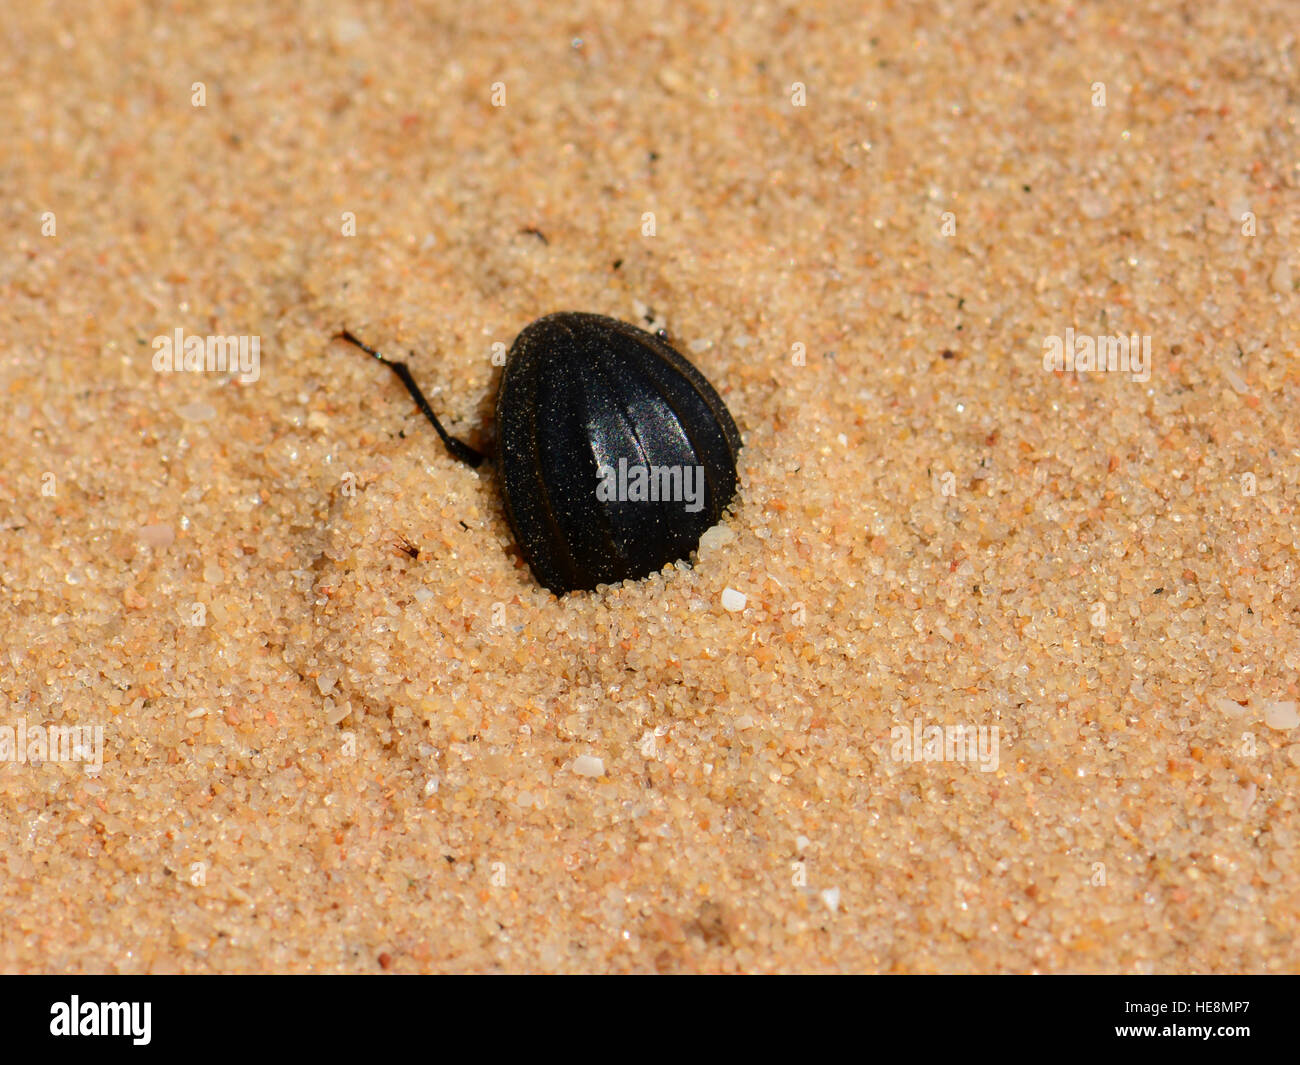 Beetle creuser dans le sable Banque D'Images